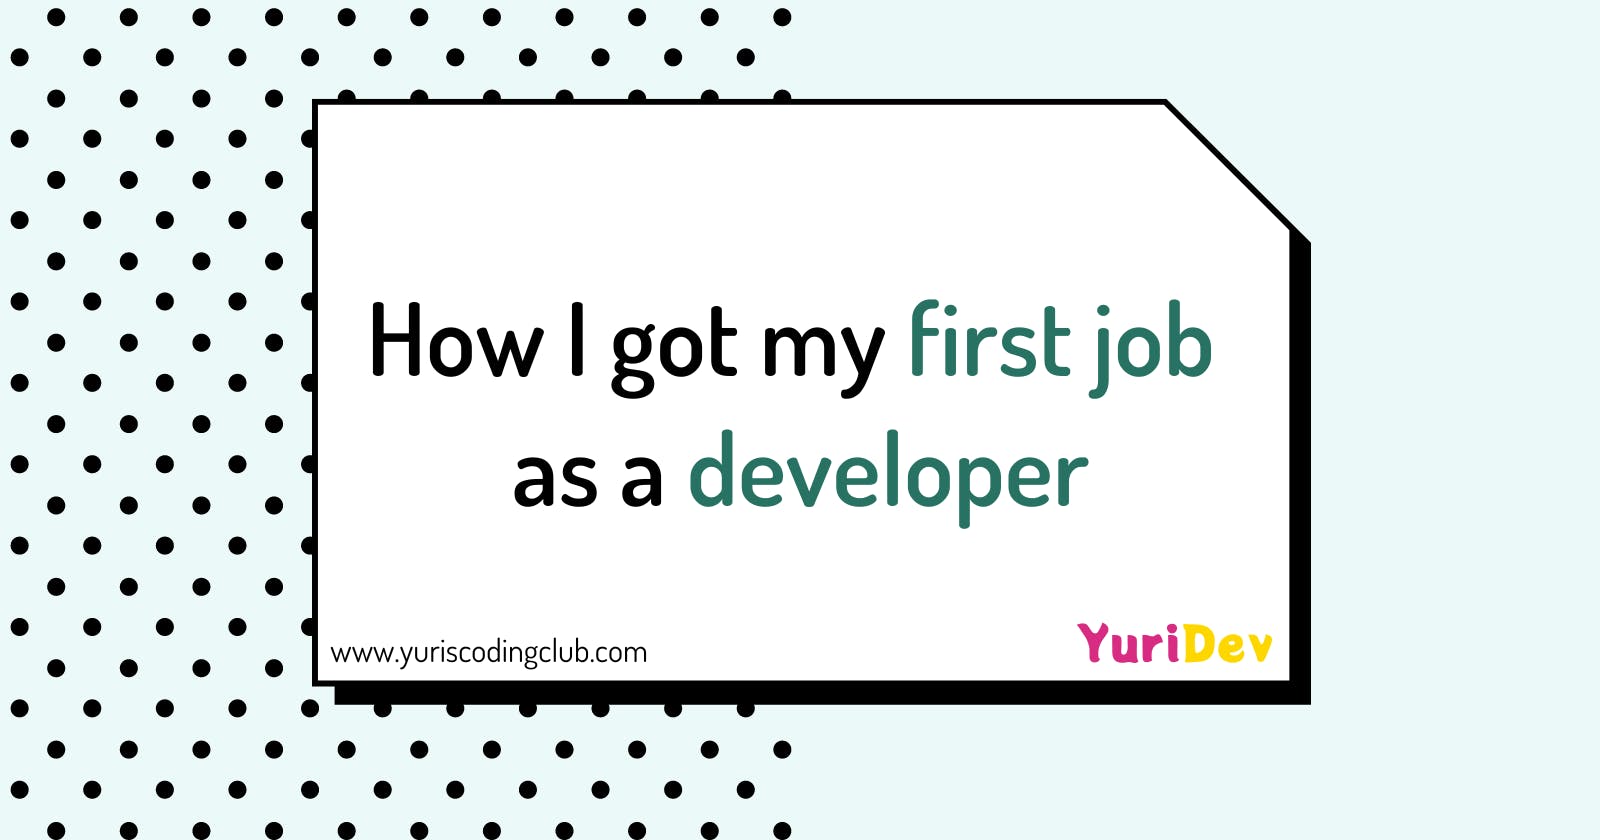 How I got my first job as a developer